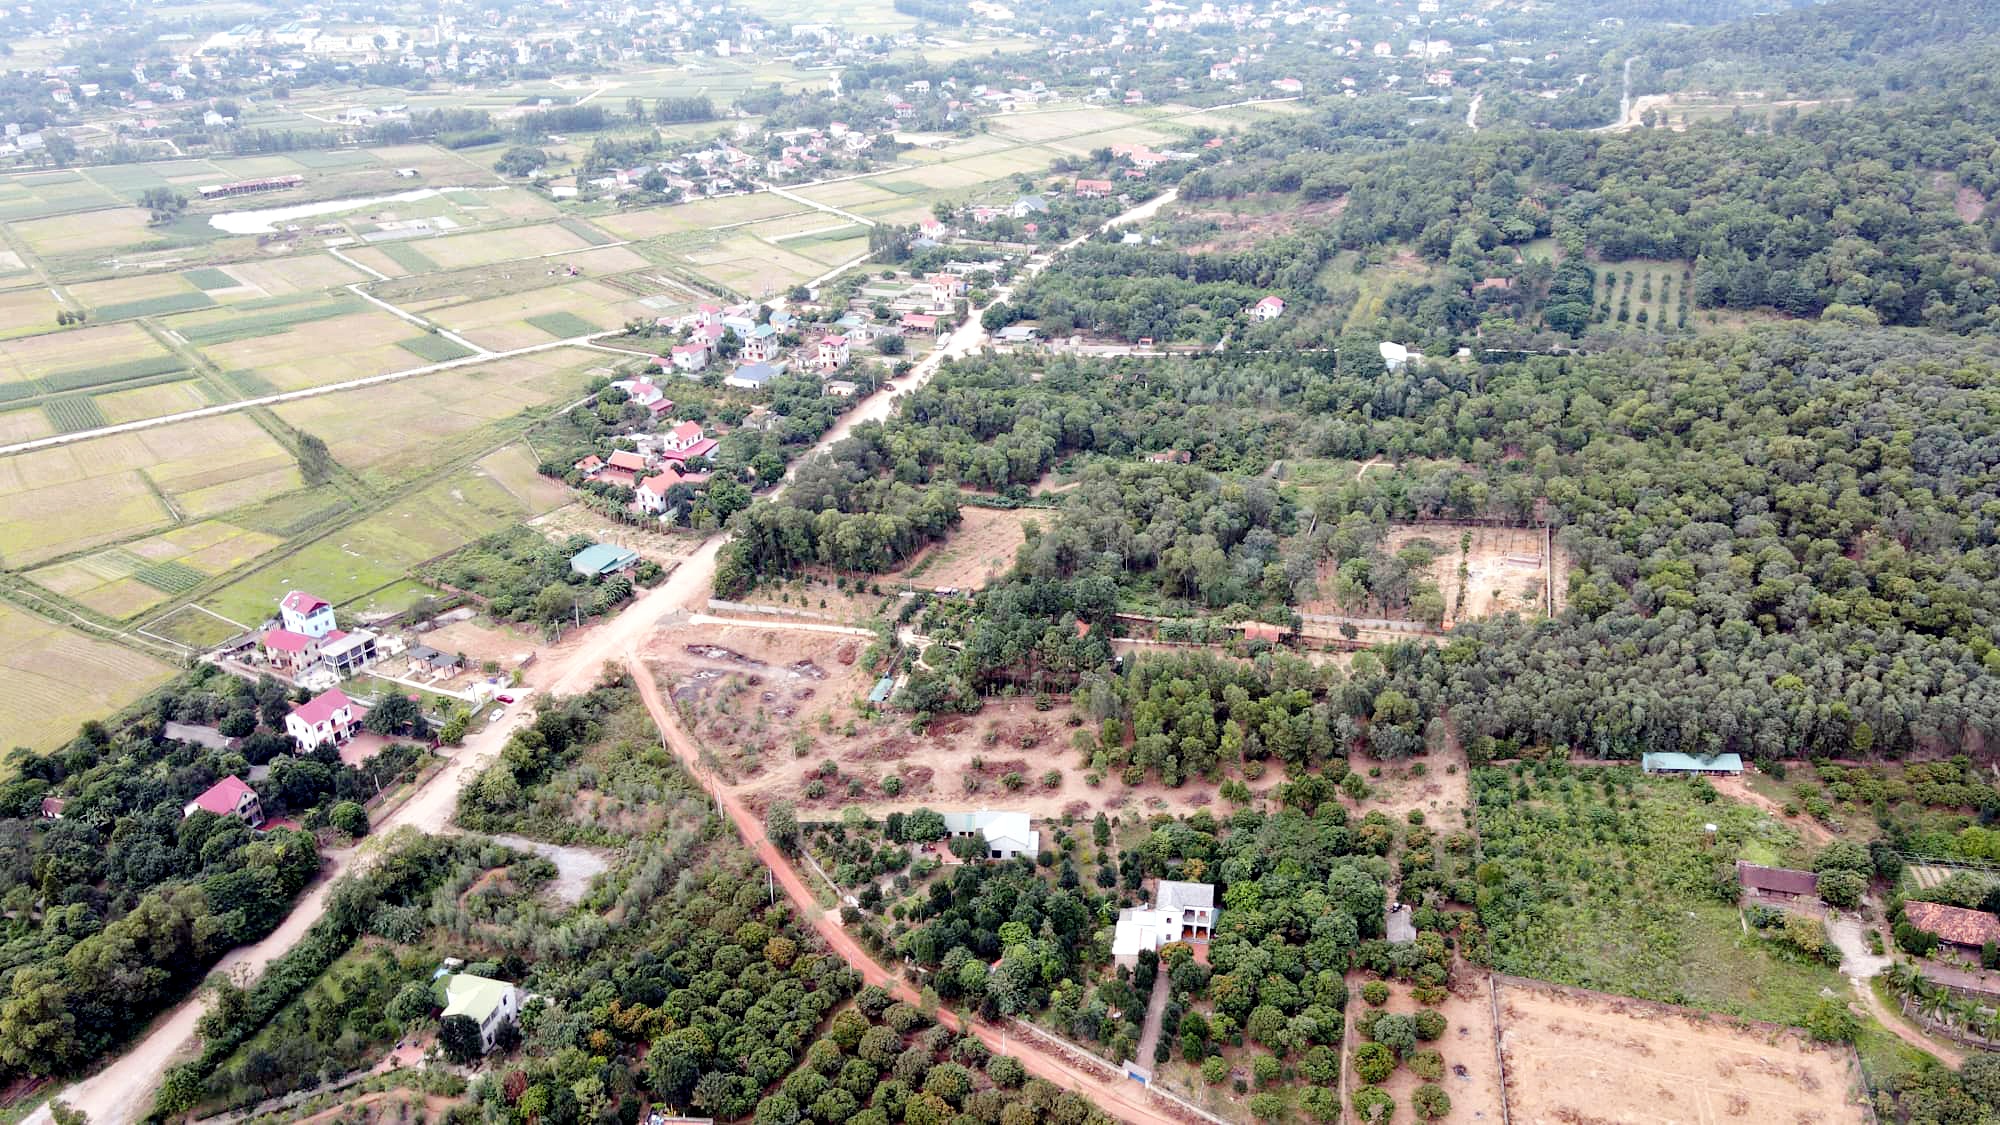 Hà Nội: Giá đất quanh đường vành đai 4 có nơi lên đến 150 triệu đồng/m2 - 2